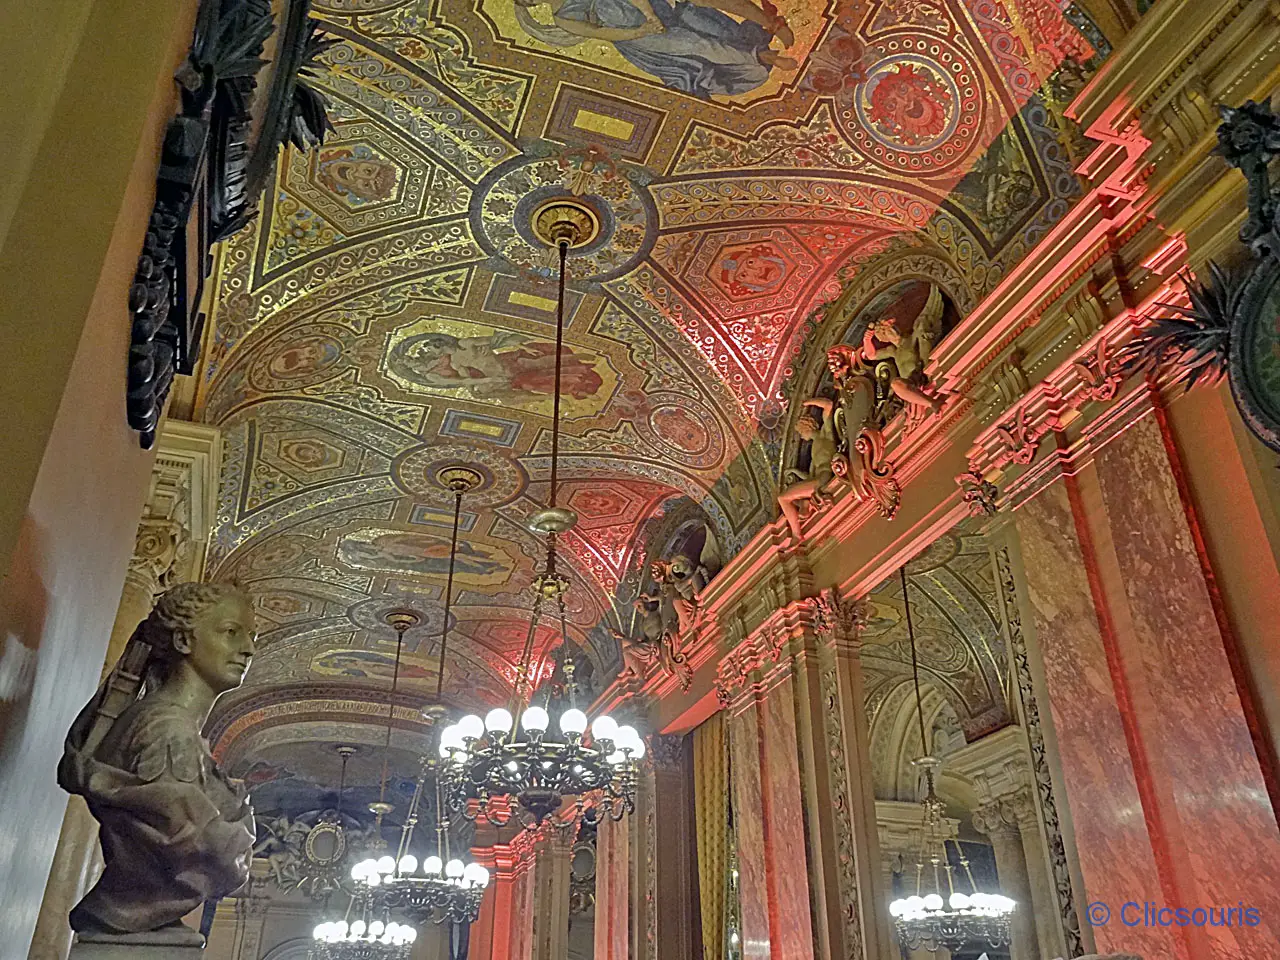 avant-foyer de l'Opéra Garnier